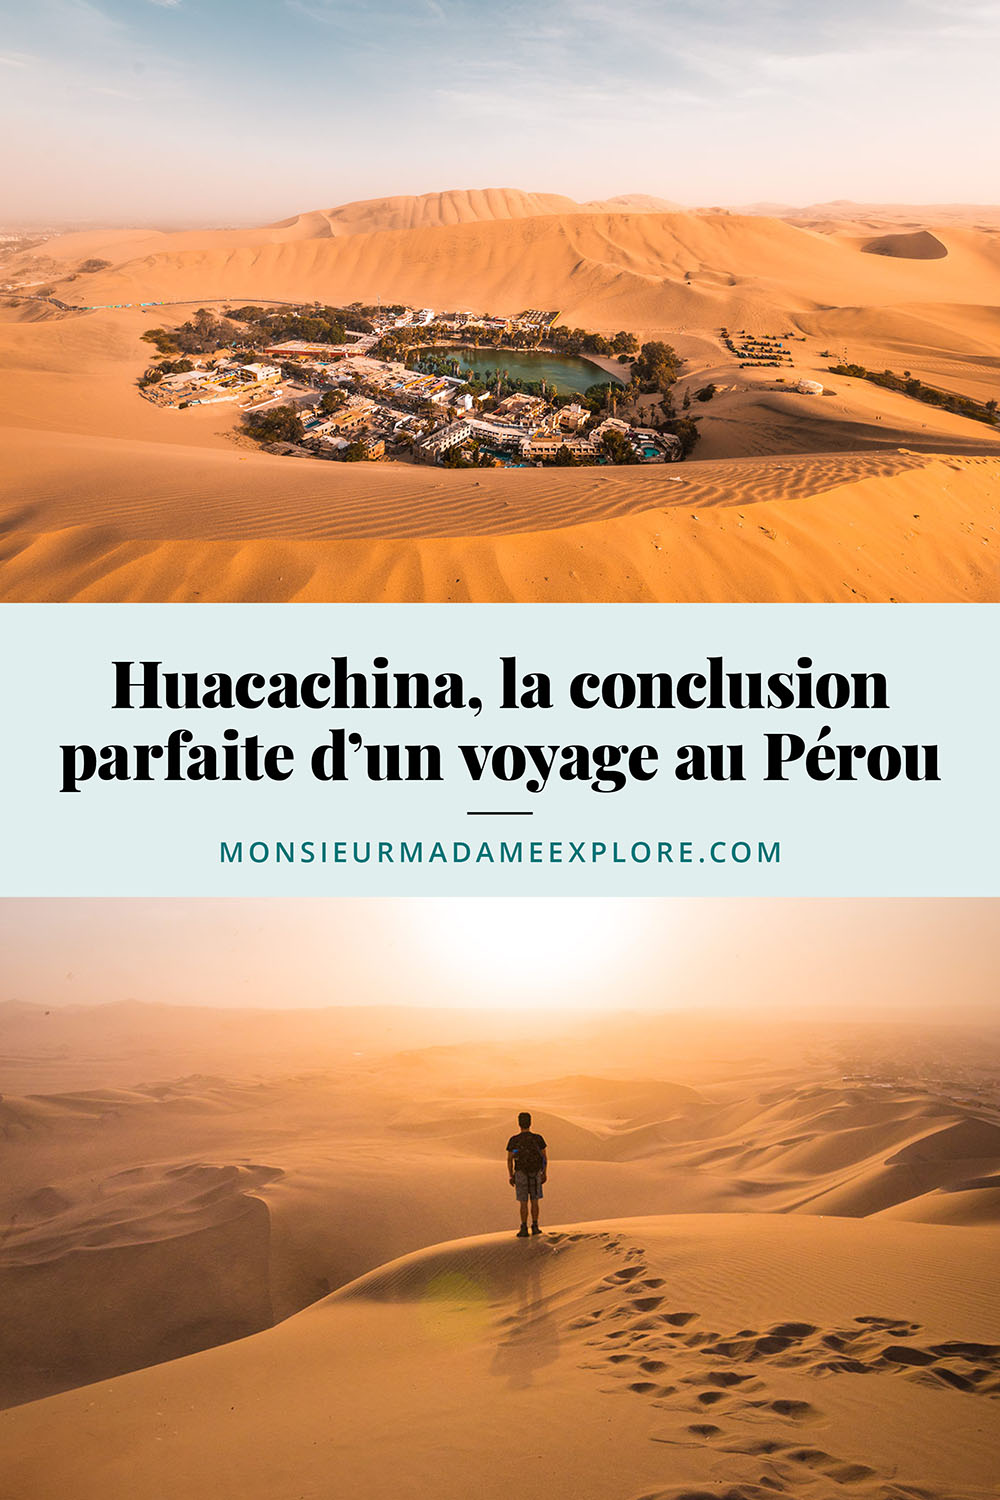 Huacachina, ou comment conclure parfaitement un voyage au Pérou, Monsieur+Madame Explore, Blogue de voyage, Pérou / Visiting Huacachina, Peru